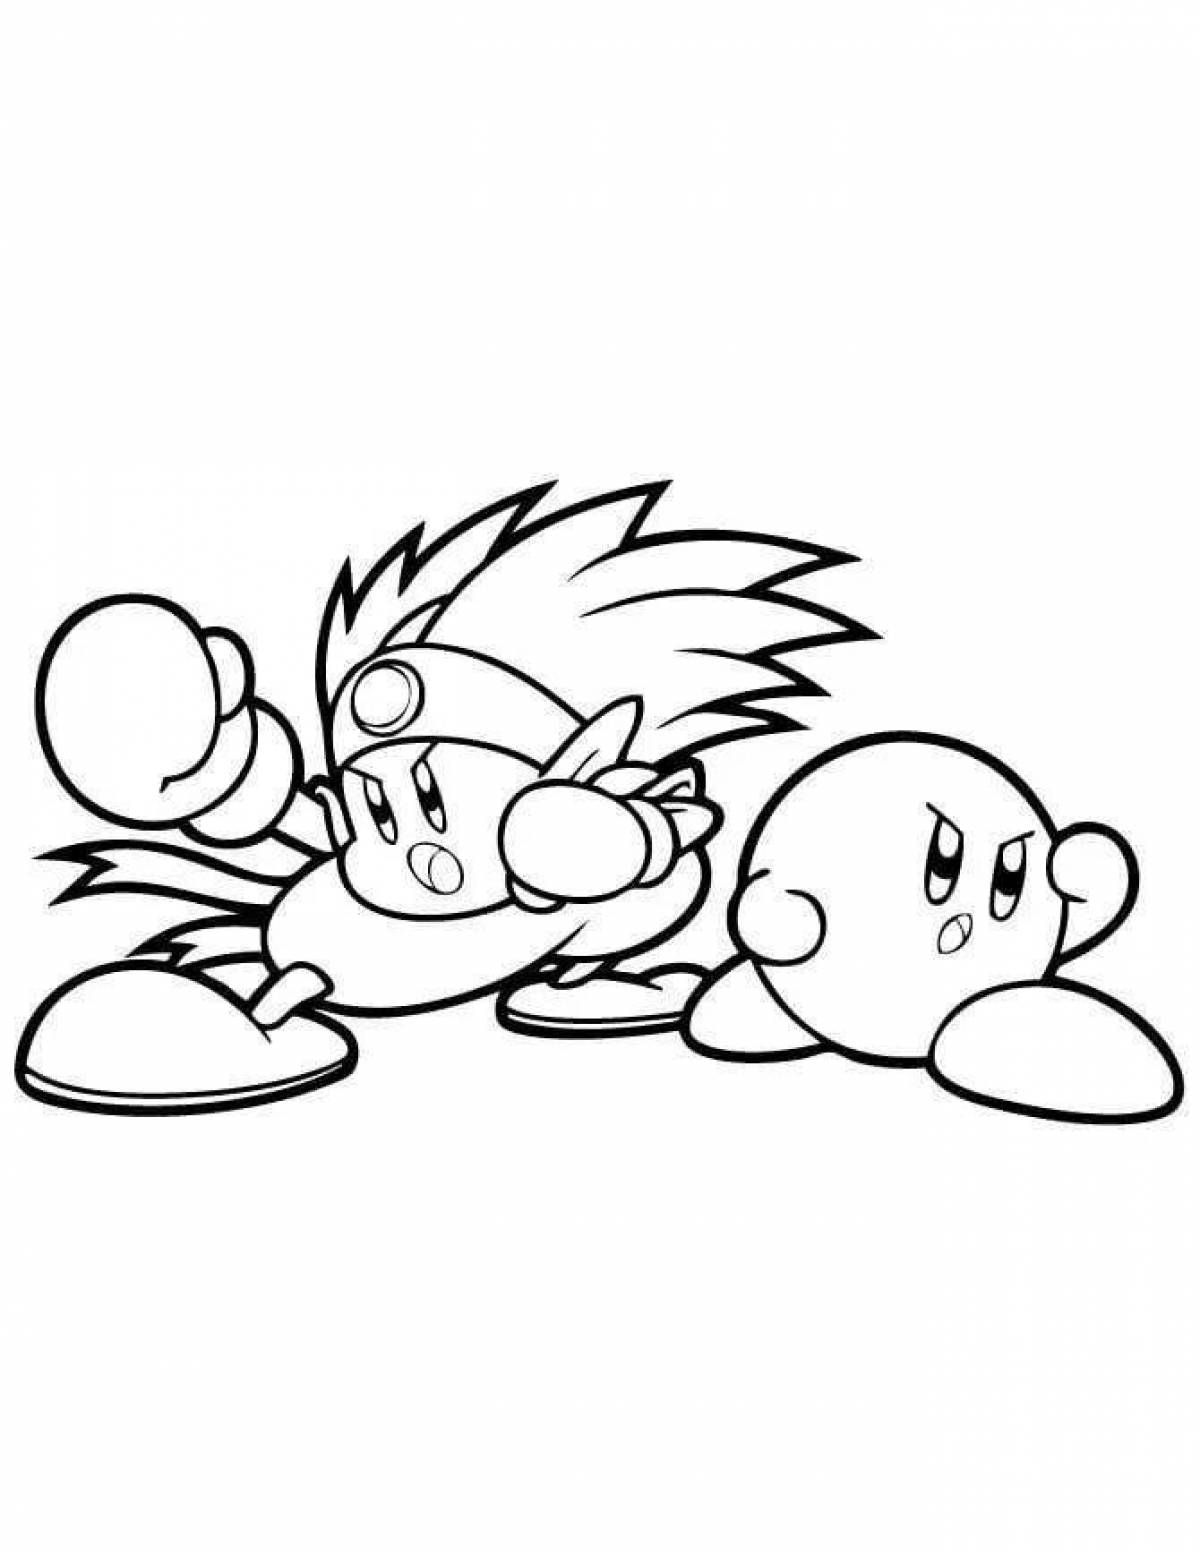 Kirby fun coloring